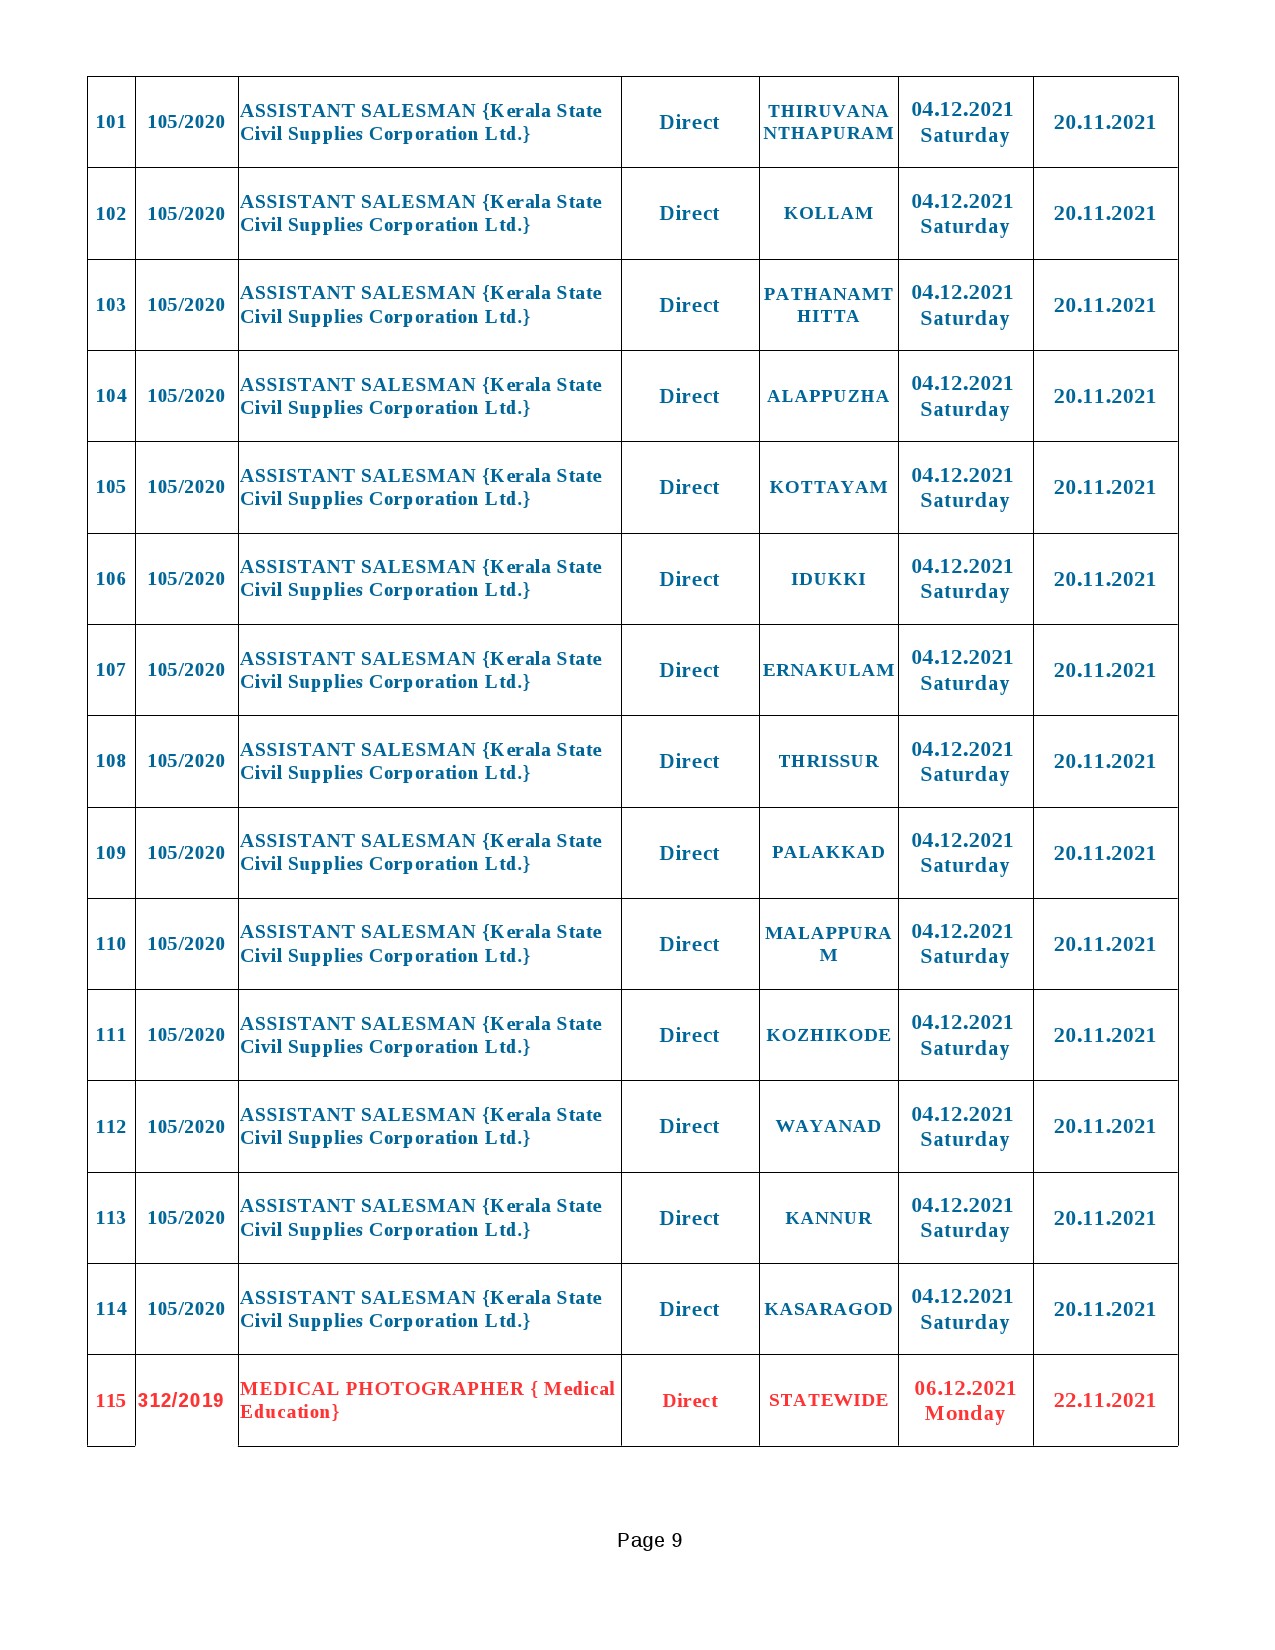 KPSC Exam Schedule Oct to Dec 2021 - Notification Image 9